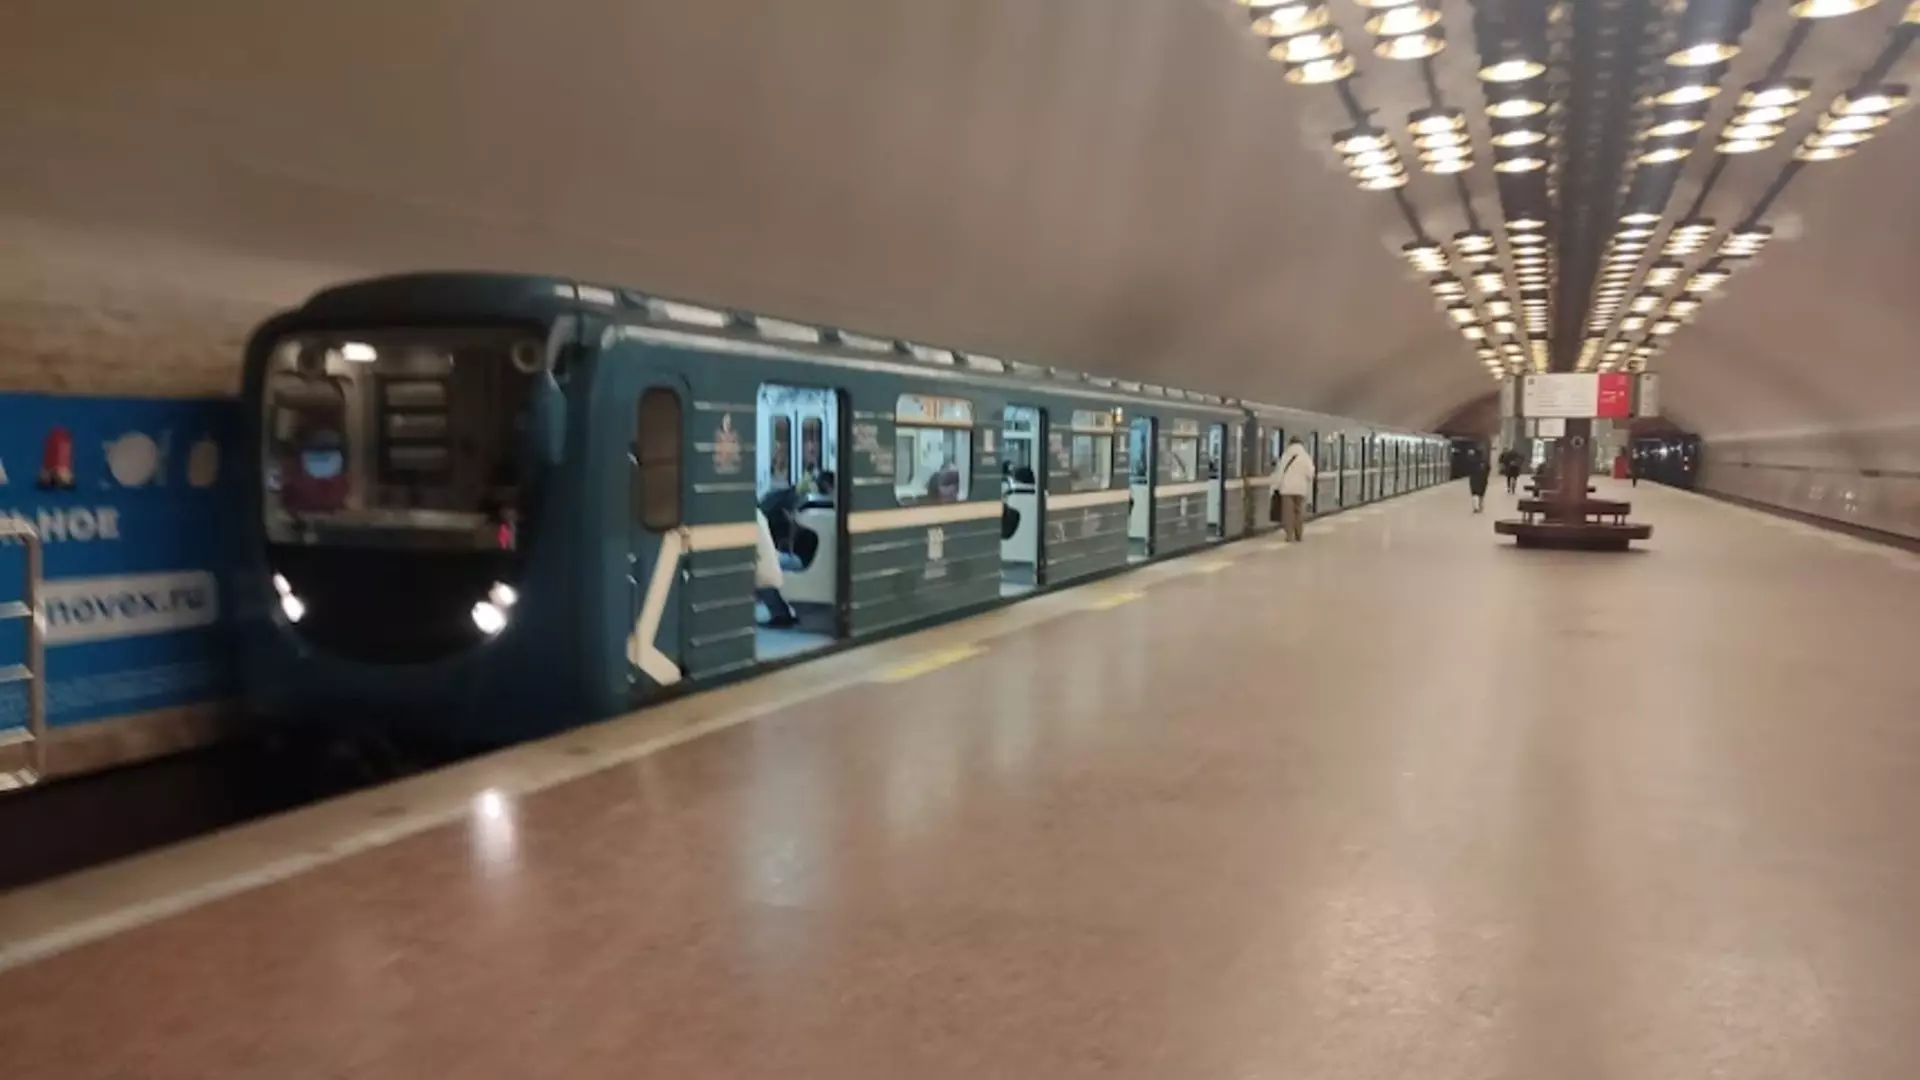 Проект продолжения метро в Новосибирске могут поручить иногородней фирме